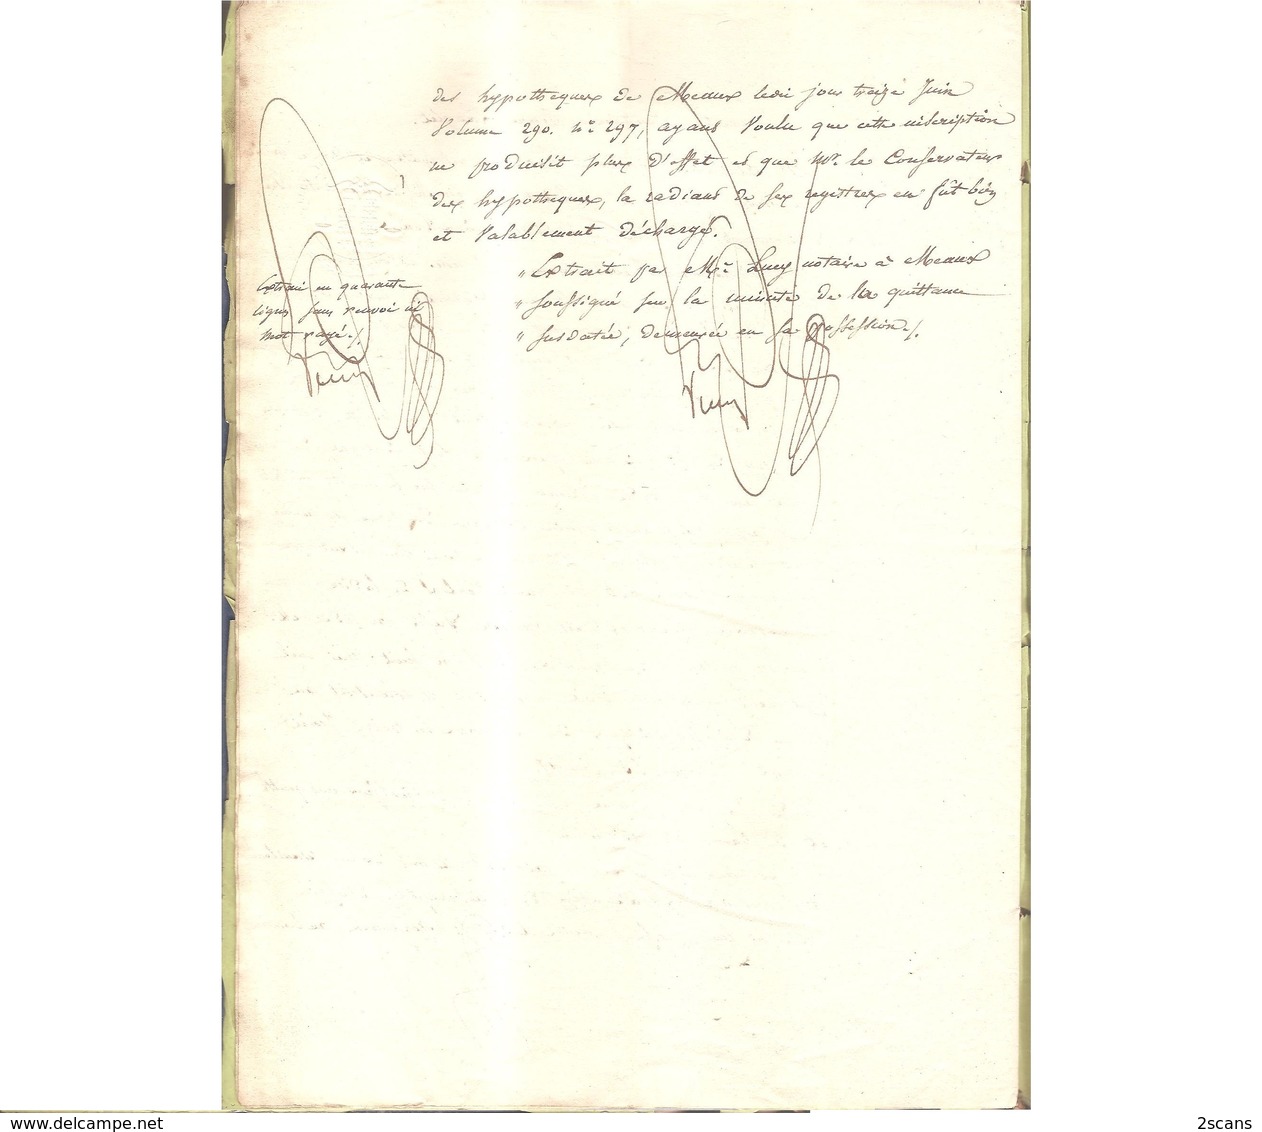 77 - VILLENOY - 1843 - Adjudication à la requête des sieur et dame GEOFFROY (Me LUCY notaire à Meaux) - COLLINET GERMAIN